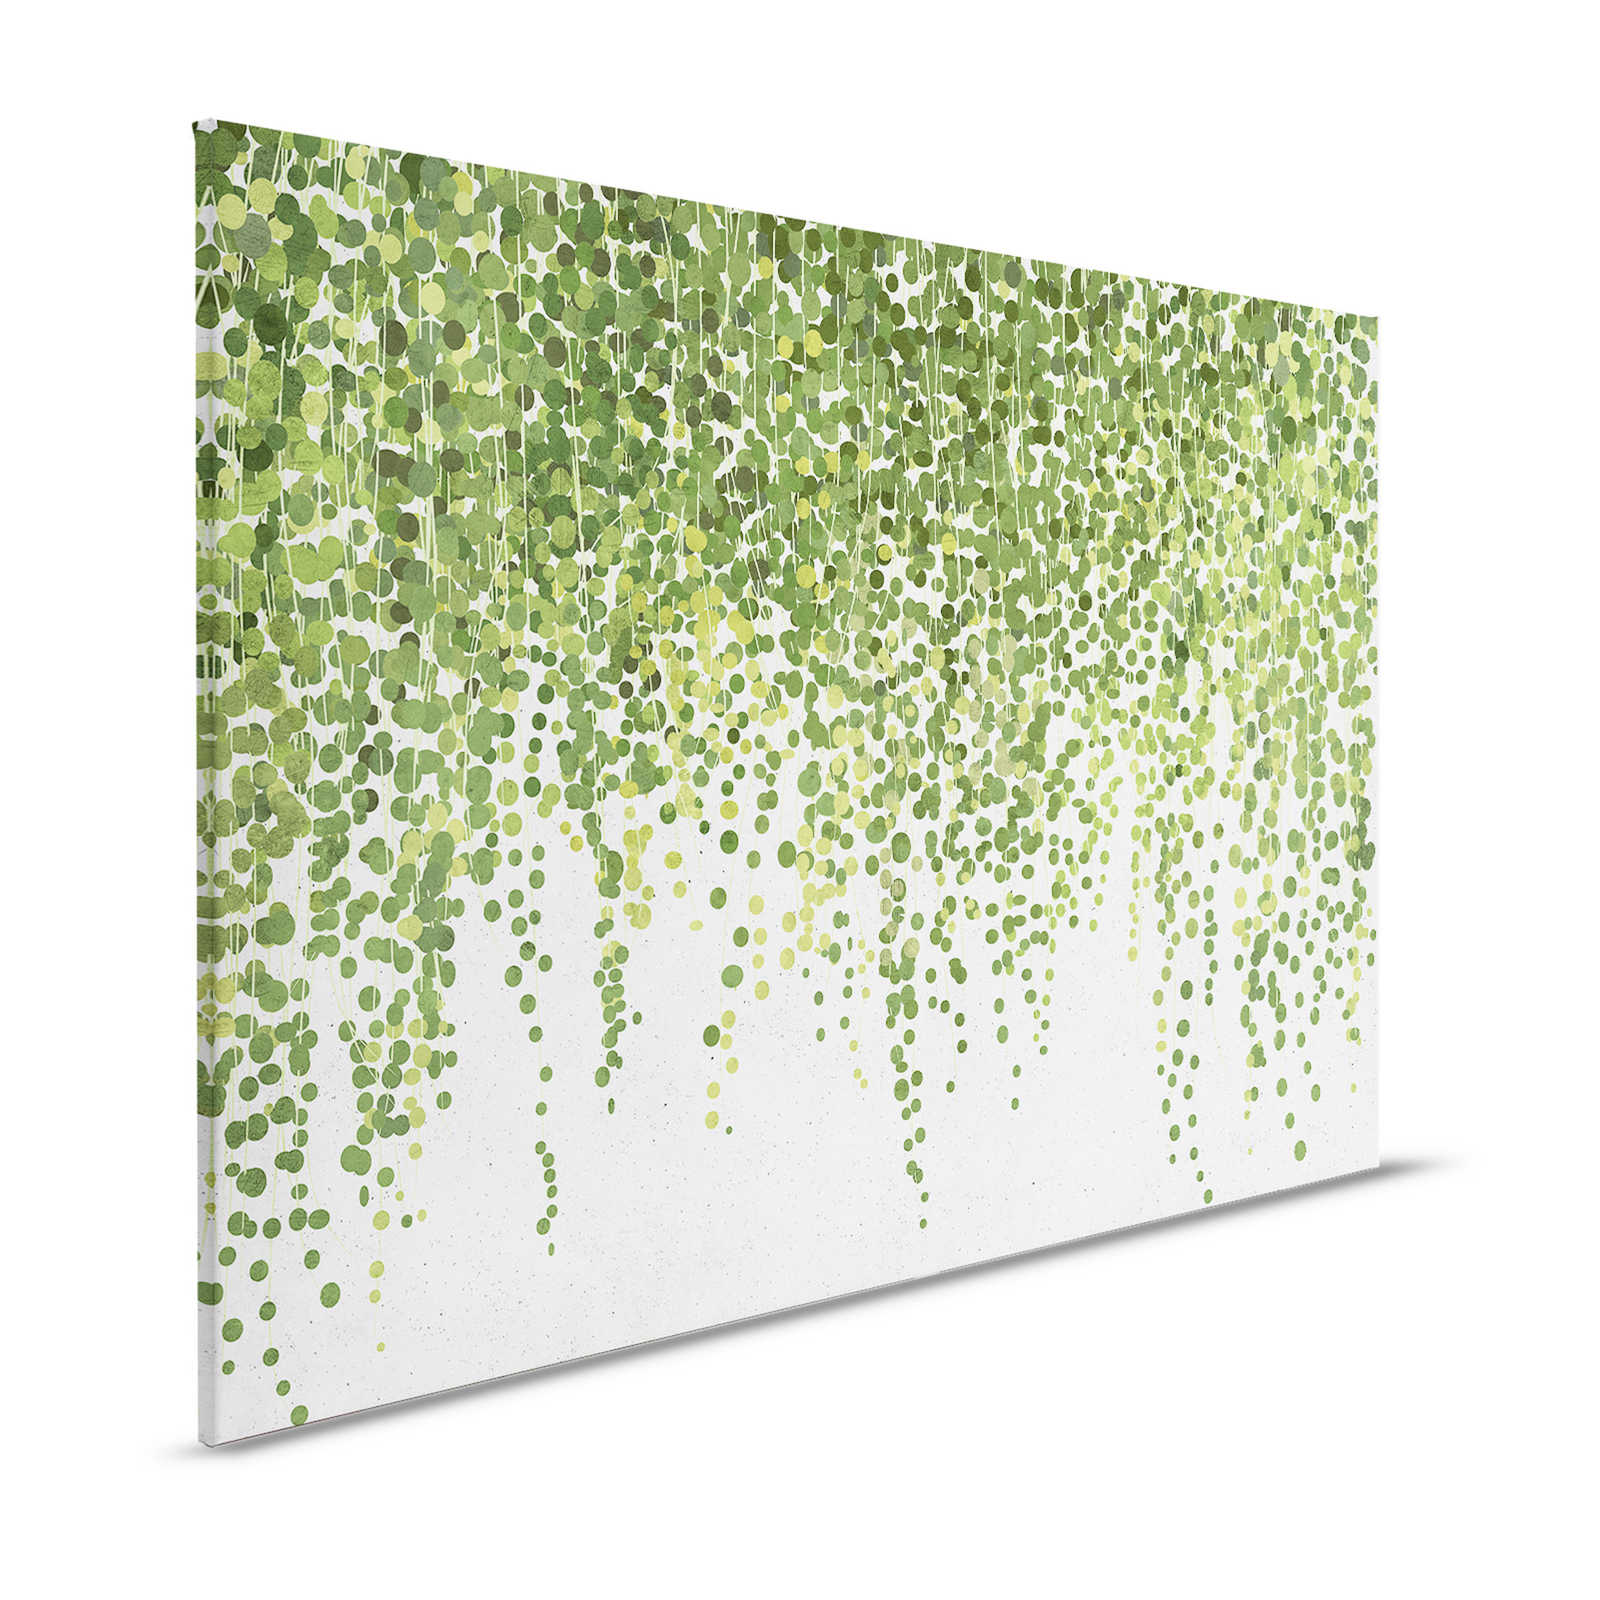 Giardino sospeso 1 - Quadro su tela Foglie di vite, giardino sospeso in cemento - 1,20 m x 0,80 m
